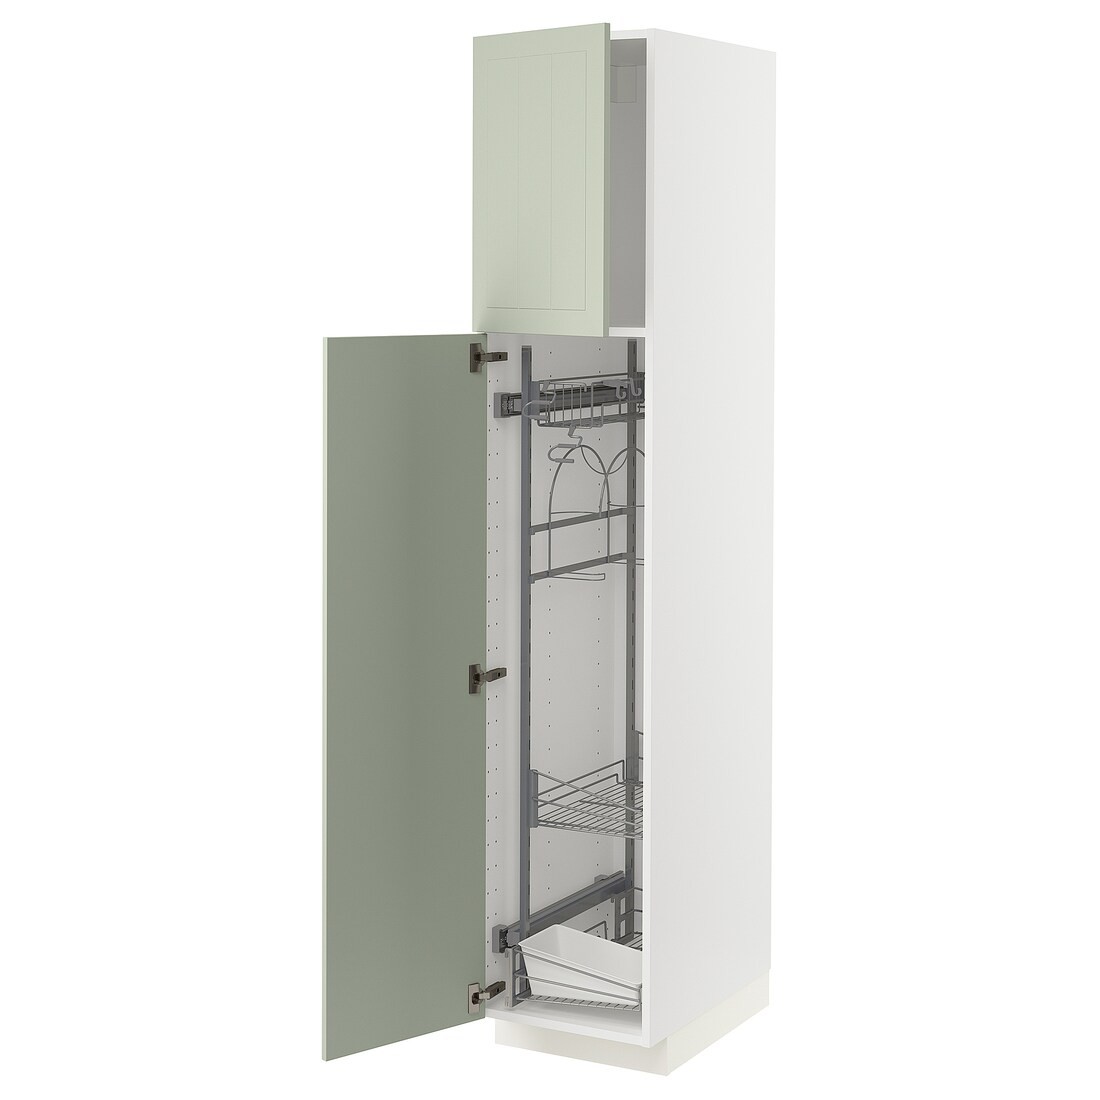 METOD МЕТОД Высокий шкаф с отделением для аксессуаров для уборки, белый / Stensund светло-зеленый, 40x60x200 см